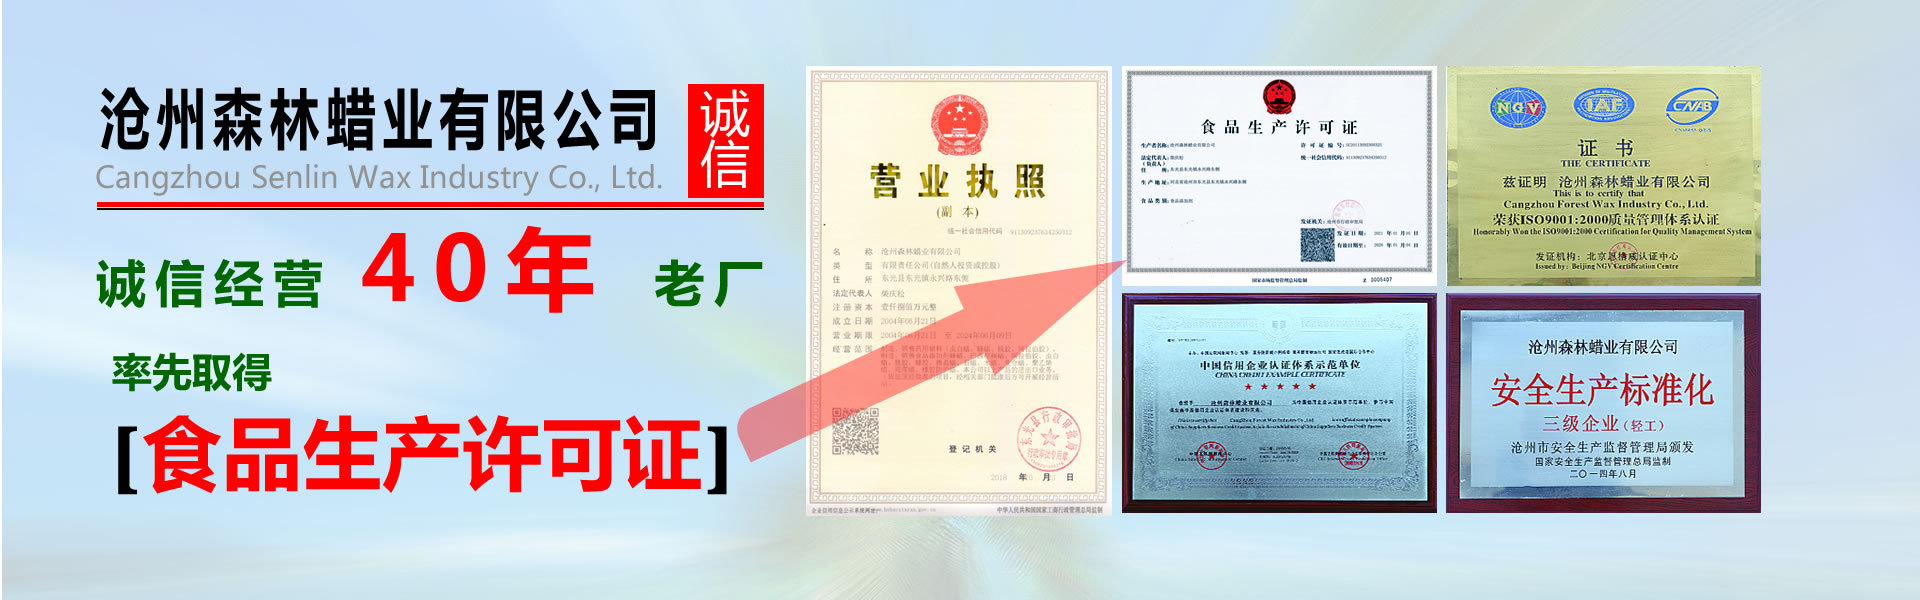 沧州森林蜡业公司荣誉证书